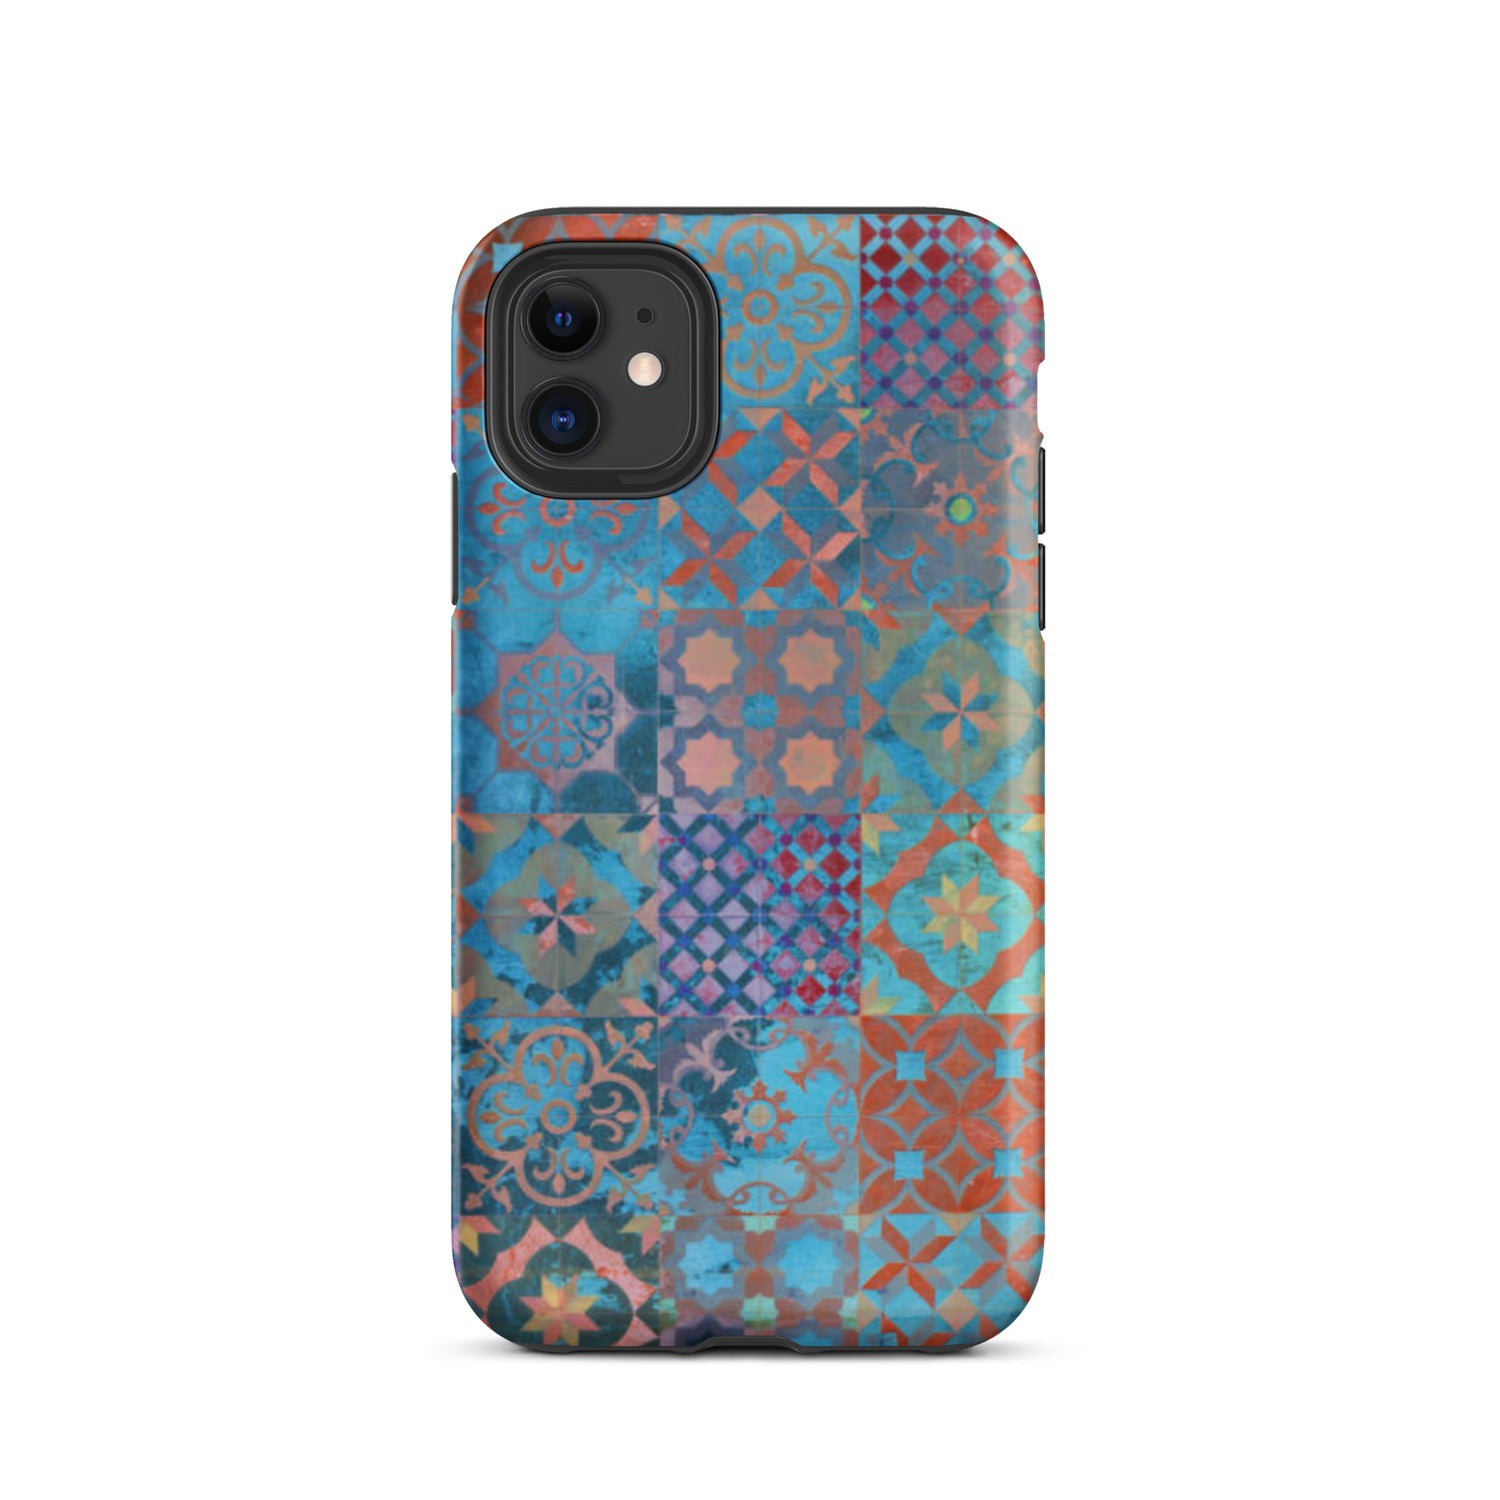 Moroccan Tile Tough iPhone 11 case